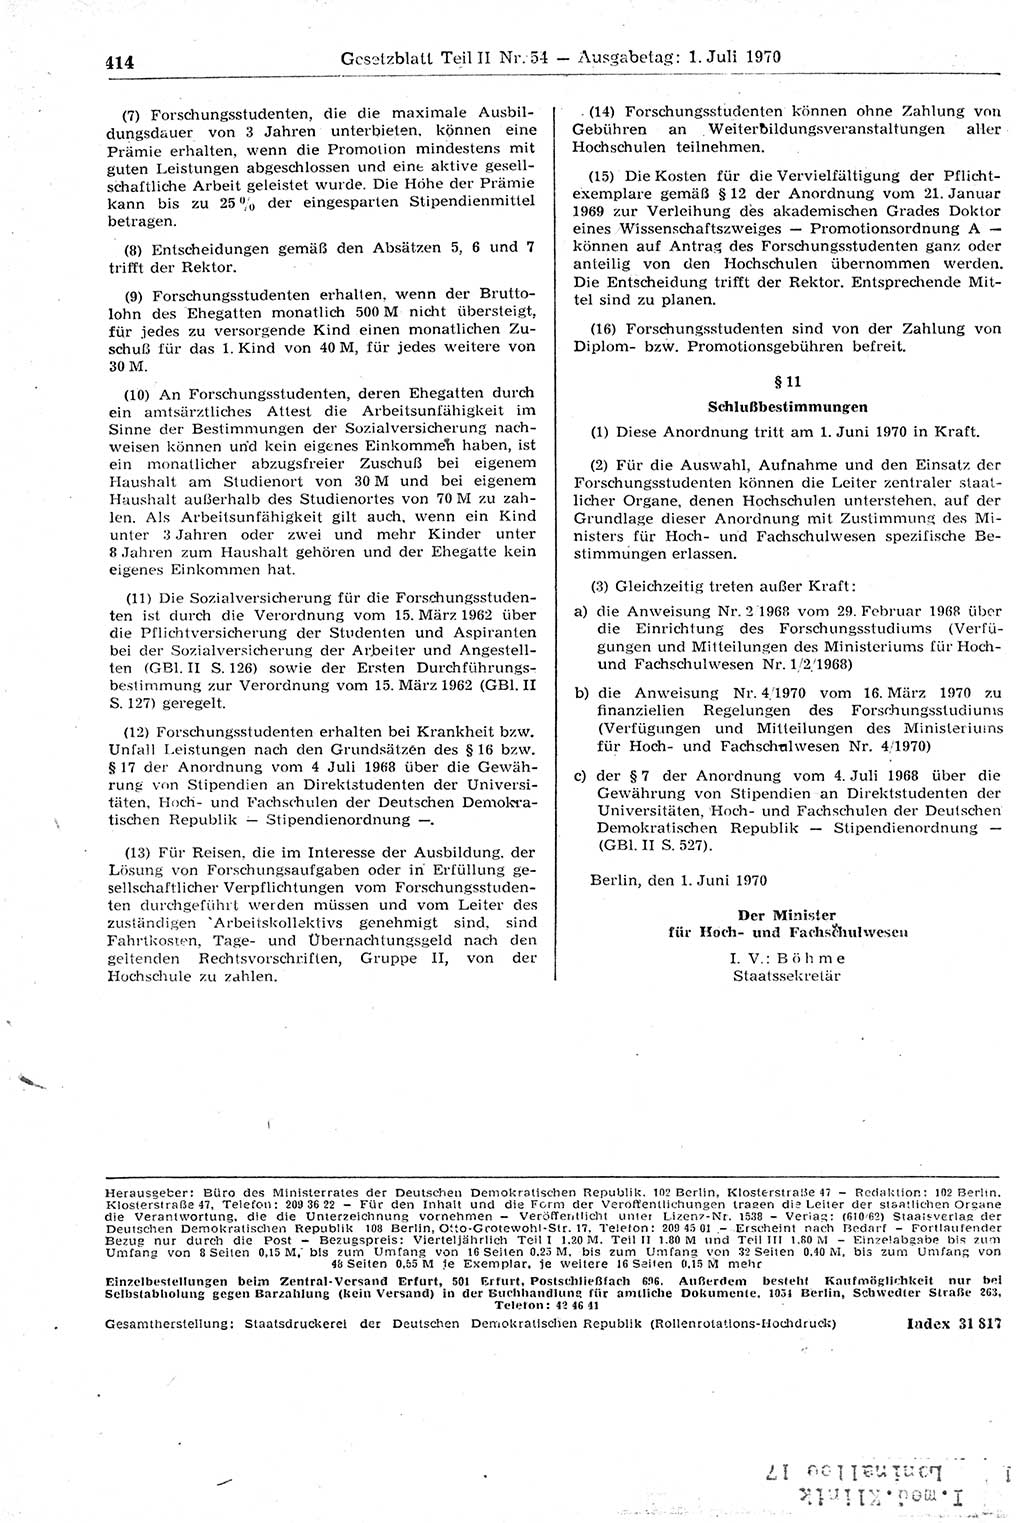 Gesetzblatt (GBl.) der Deutschen Demokratischen Republik (DDR) Teil ⅠⅠ 1970, Seite 414 (GBl. DDR ⅠⅠ 1970, S. 414)